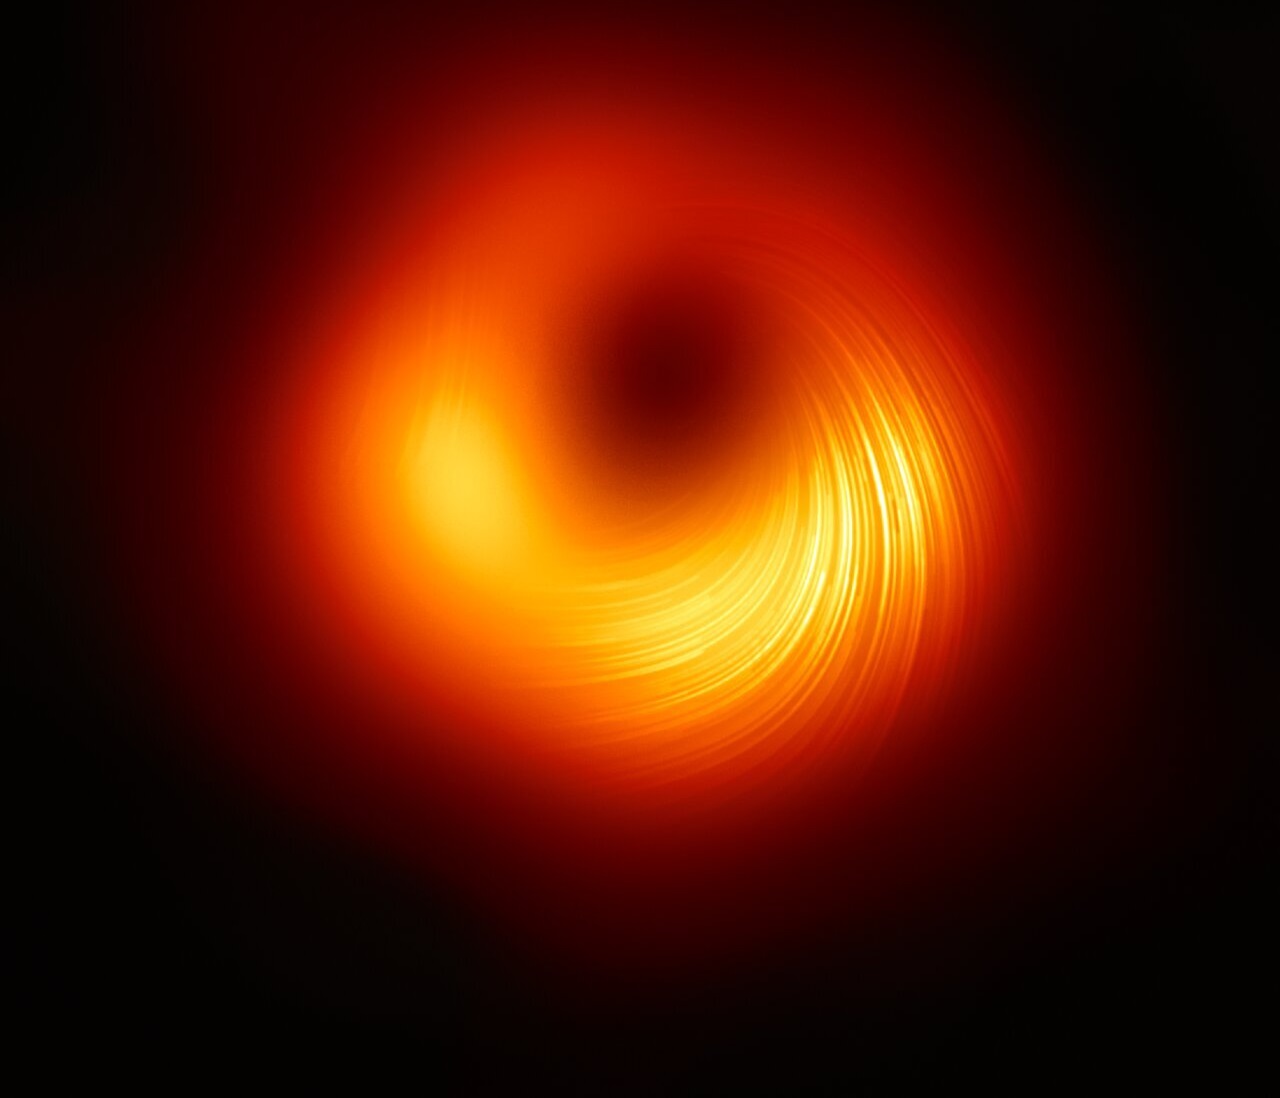 ასტრონომებმა შავი ხვრელის კიდეებთან მაგნიტური ველები გადაიღეს — პირველად ისტორიაში #1tvმეცნიერება